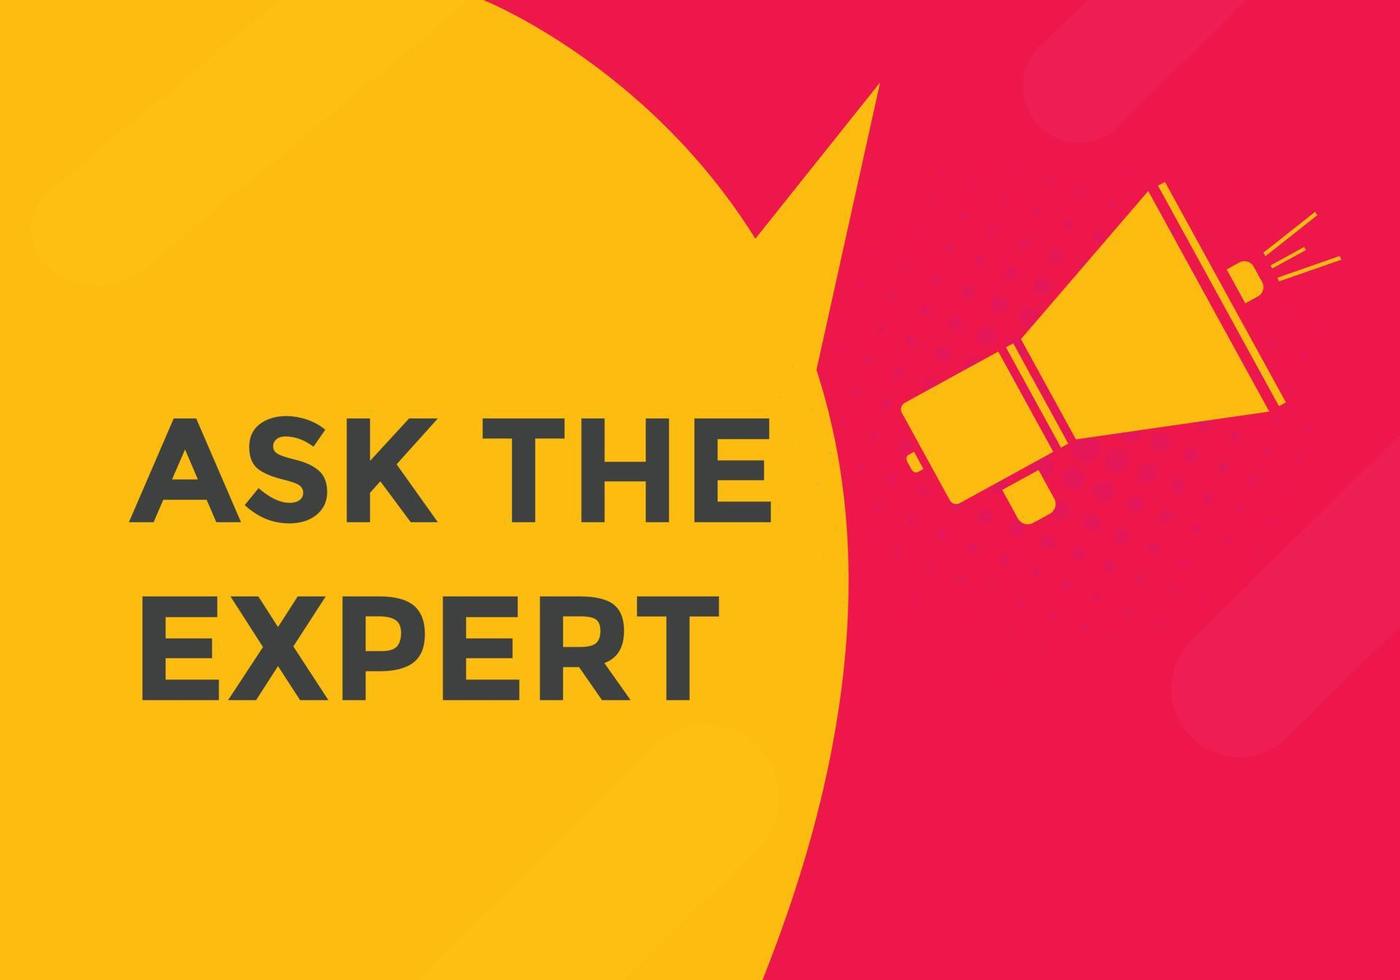 Ask the Expert button.  Ask Expert speech bubble. ask expert banner label vector